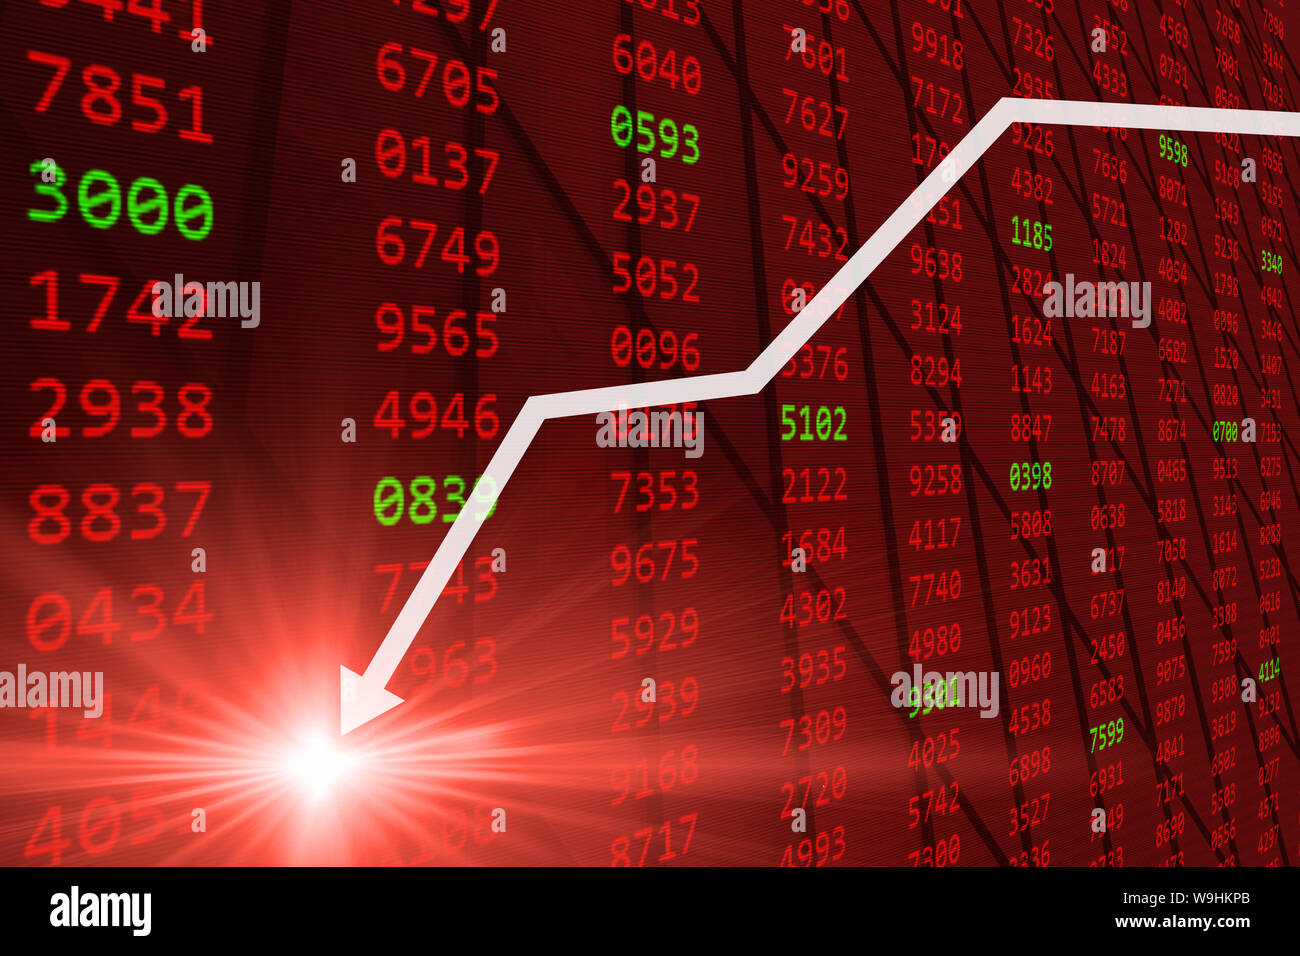 Börse - fallende Aktienkurse drop-down von der globalen Wirtschafts- und Finanzkrise Stockfoto